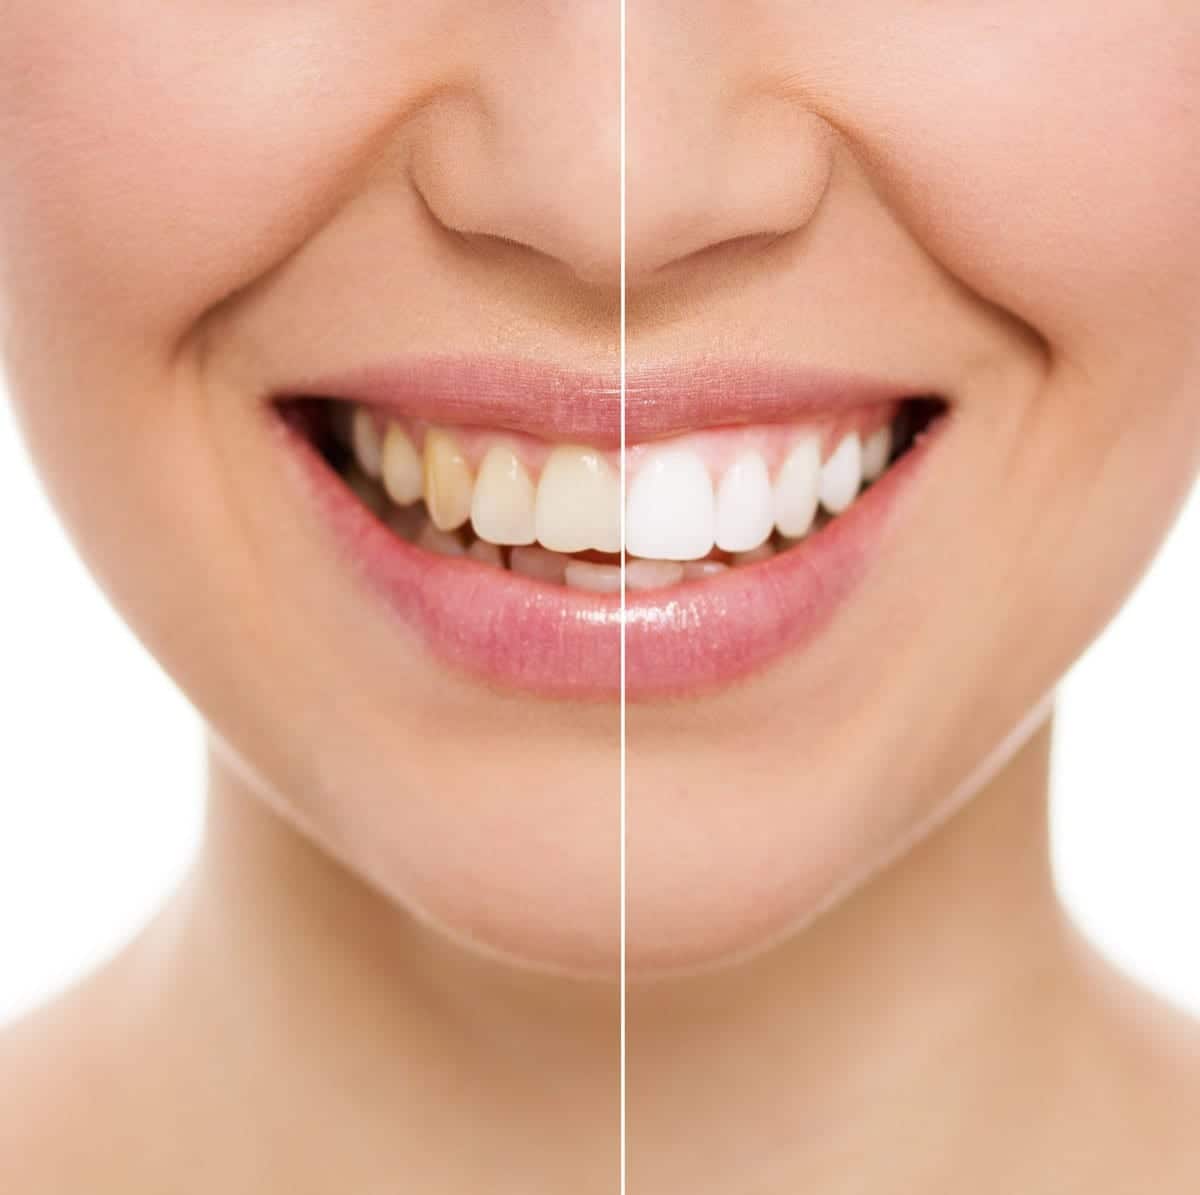 3 Ways to Whiten Your Teeth